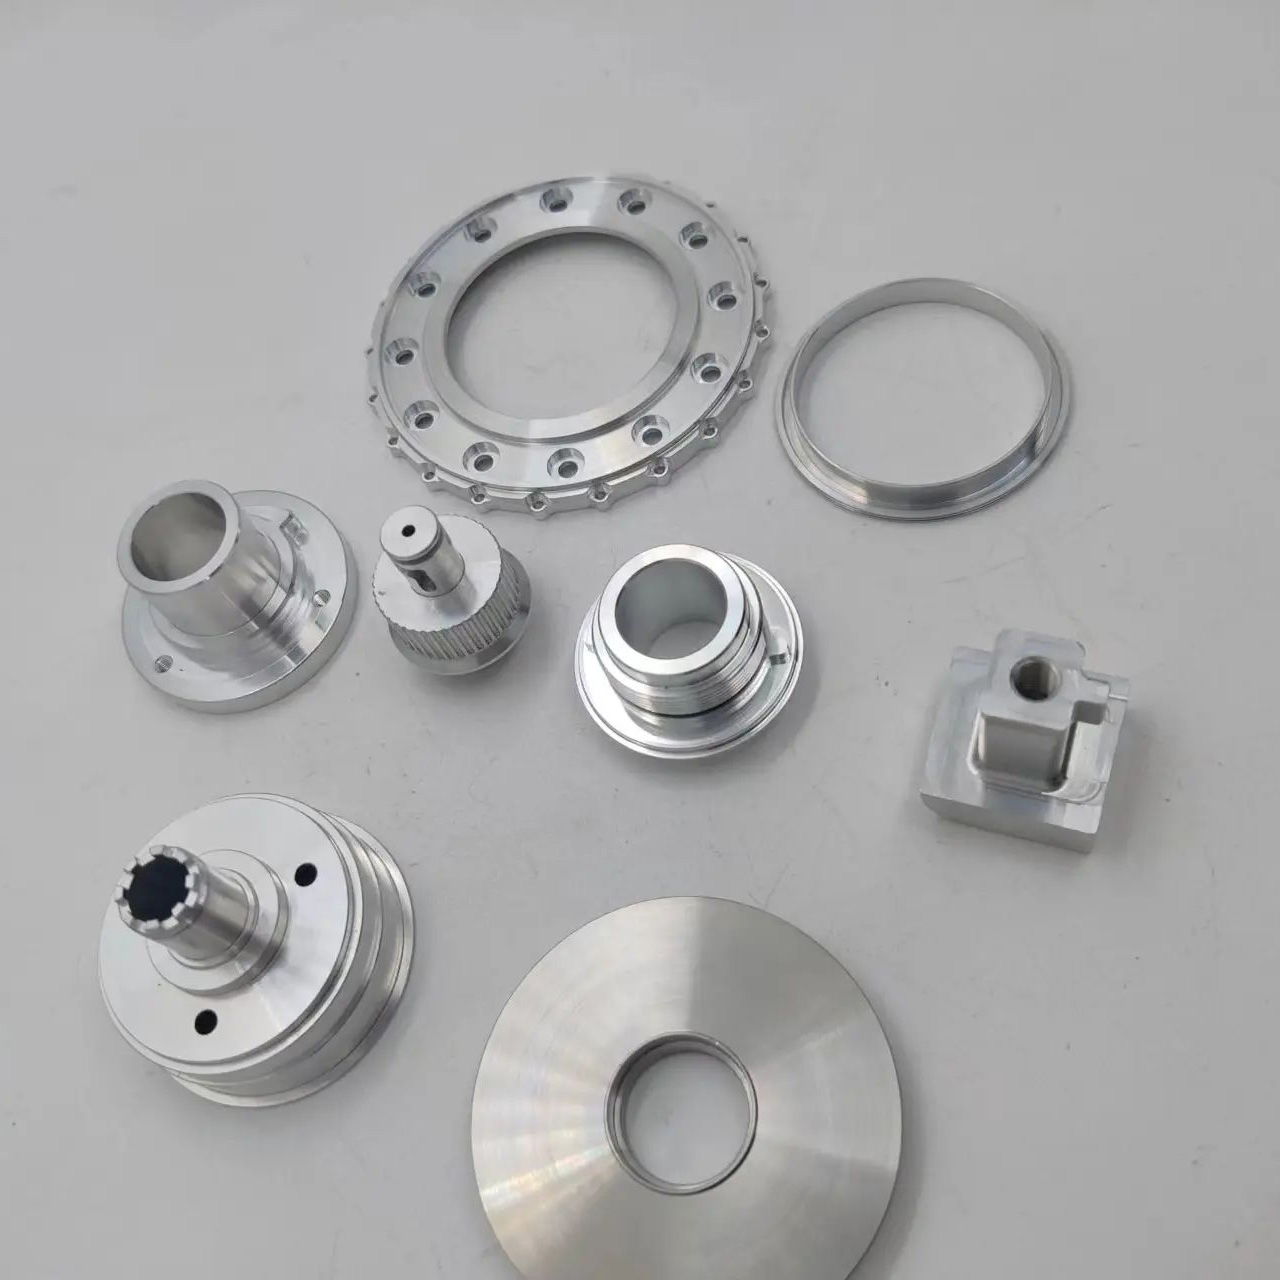 Точне OEM індивідуальне фрезерування металу Токарна обробка алюмінію з ЧПУ Представлене зображення